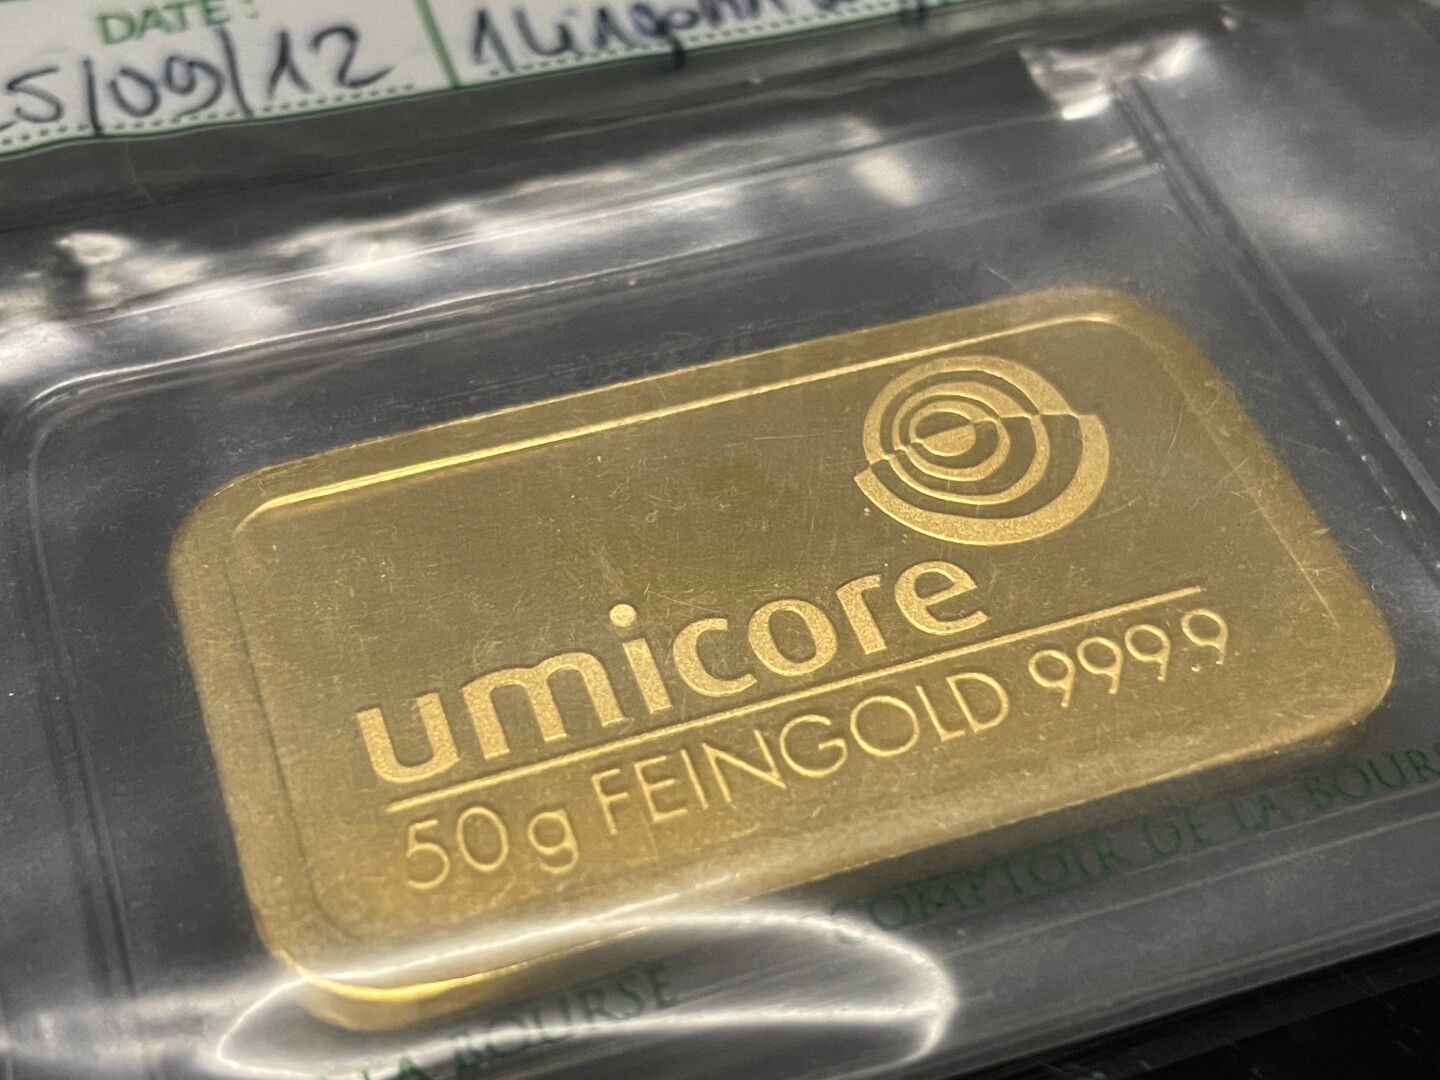 Lingotto oro 10 grammi 999.9 ORO Umicore geblistert ORIGINALE 